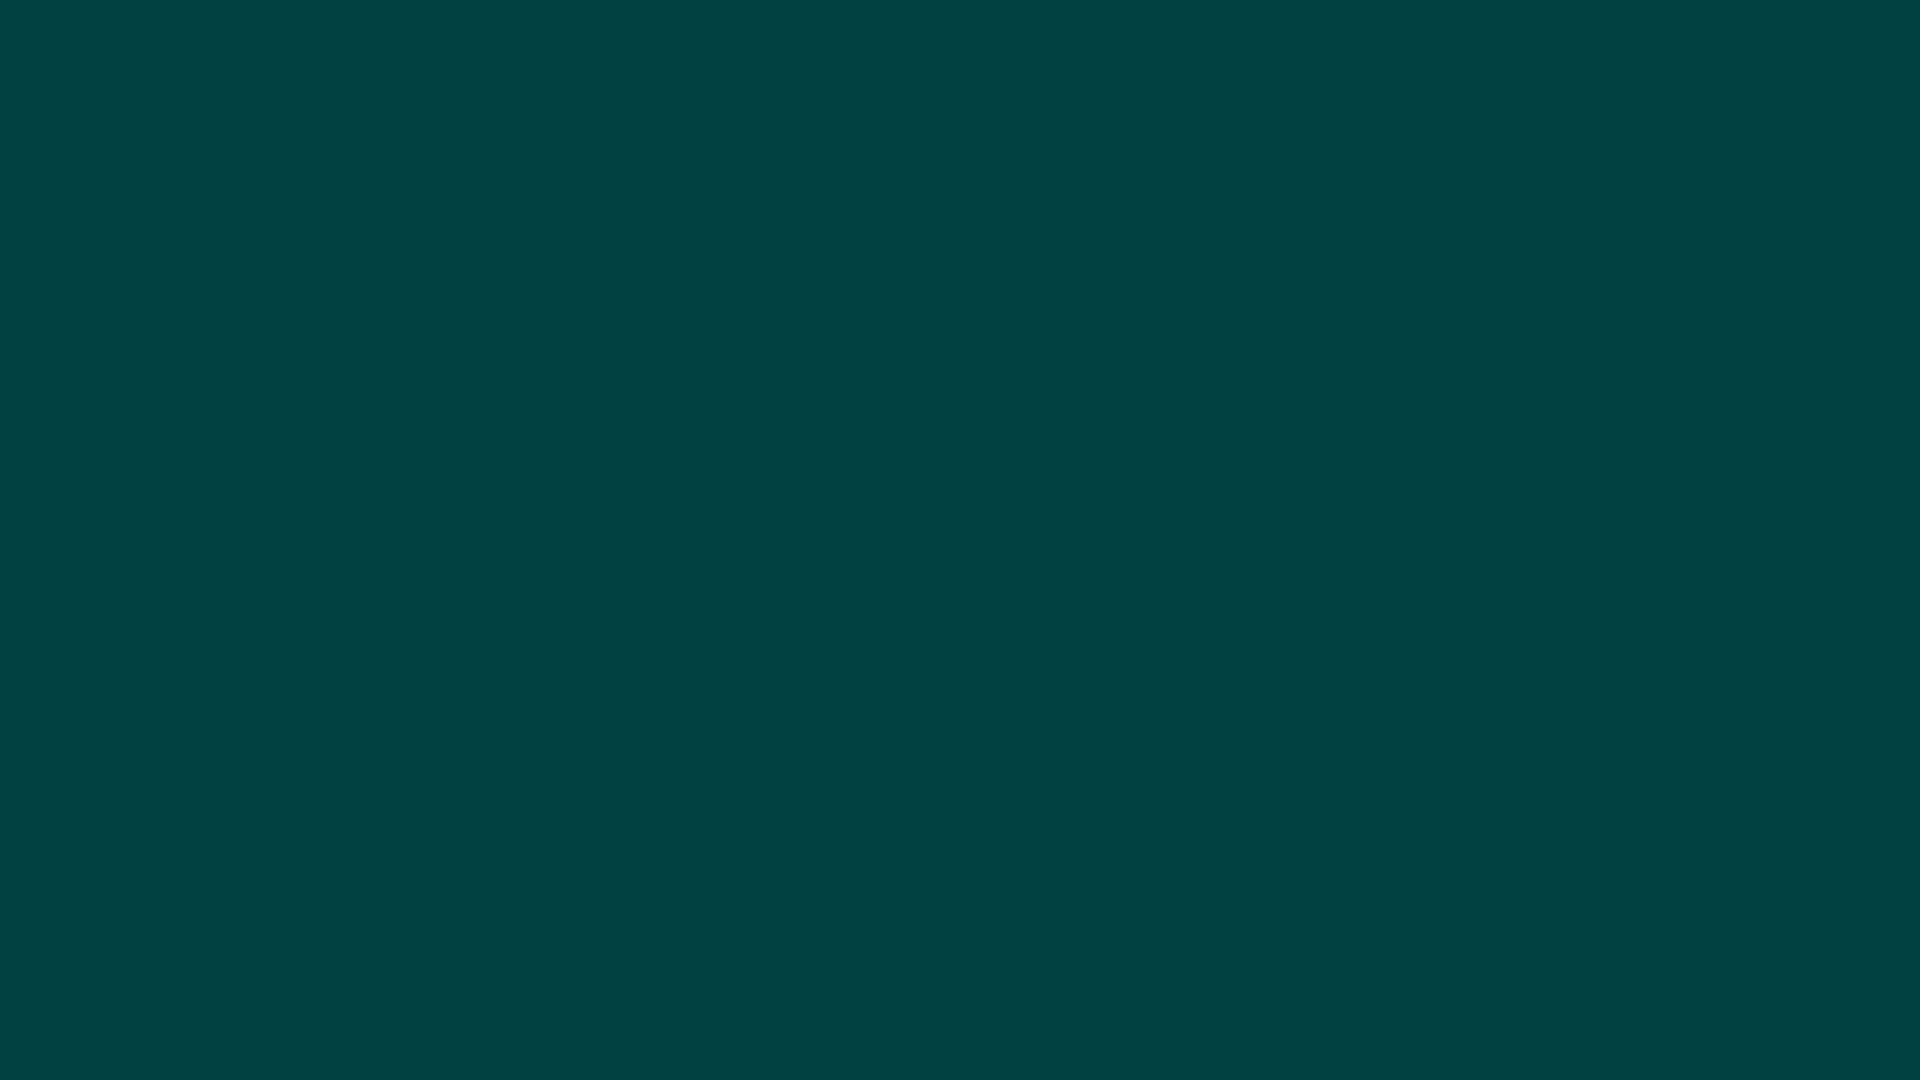 einfarbiges hintergrundbild kostenloser download,grün,blau,aqua,schwarz,türkis